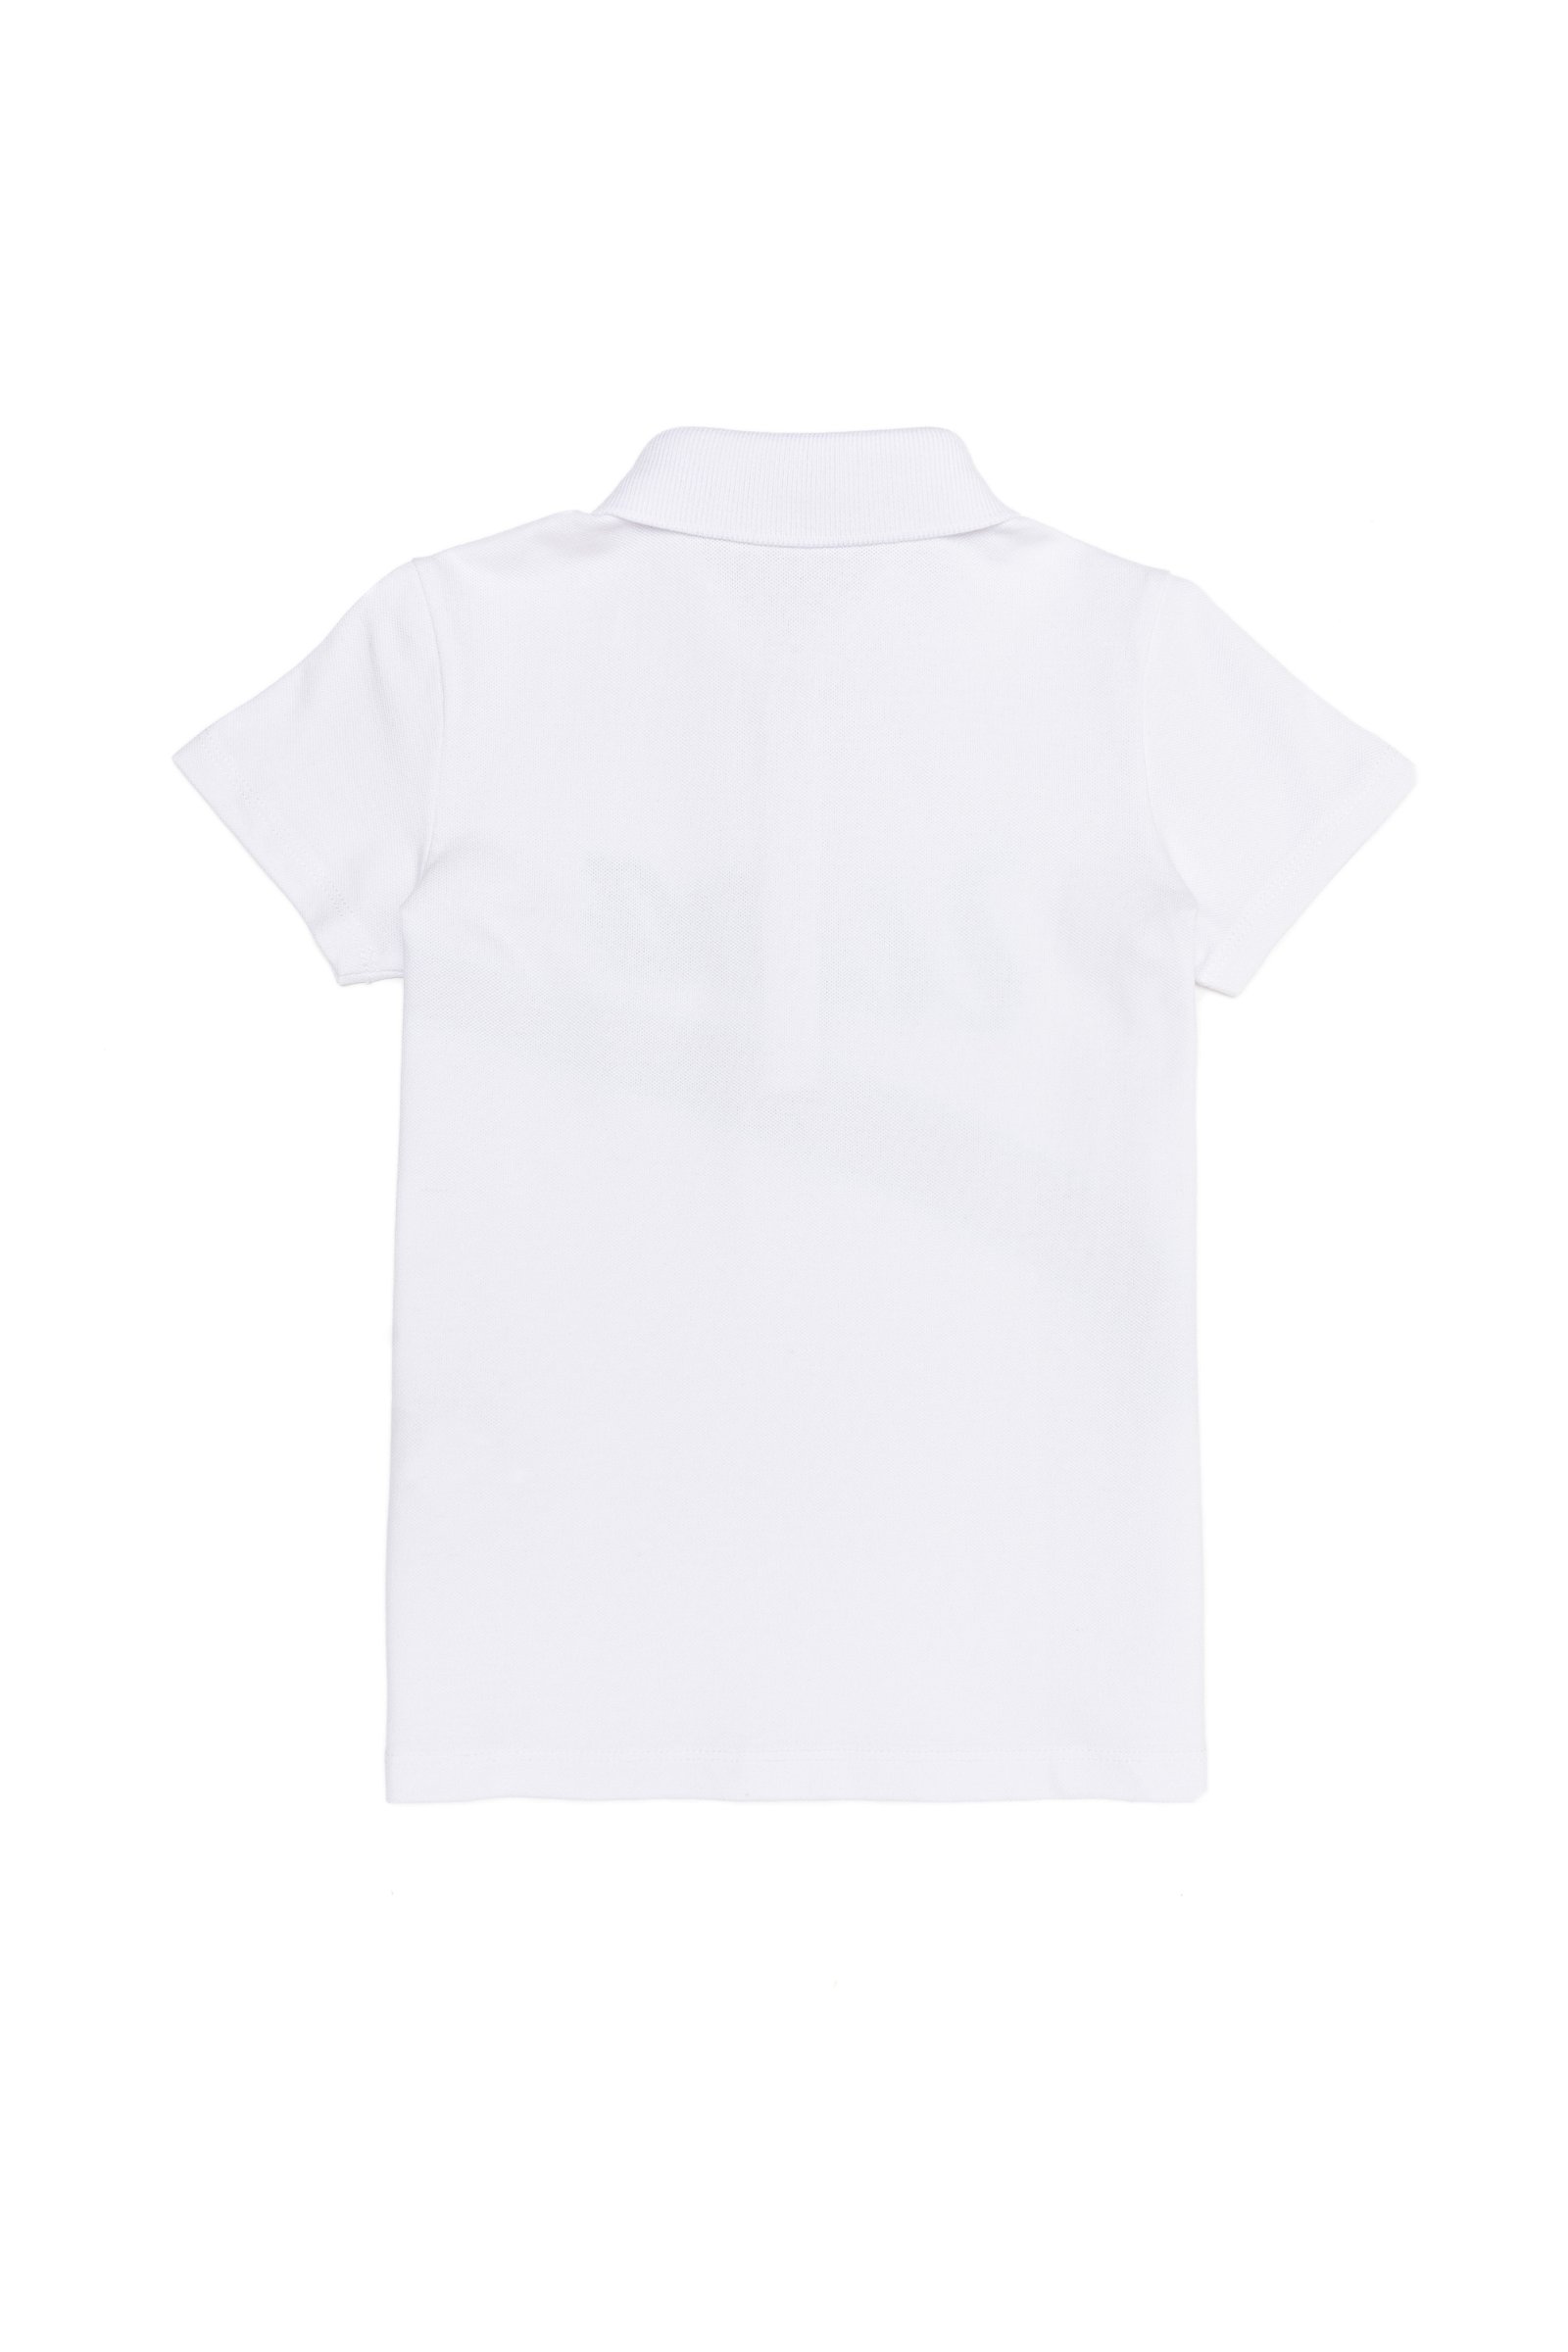 تی شرت یقه پولو سفید  استاندارد فیت  دخترانه یو اس پولو | US POLO ASSN